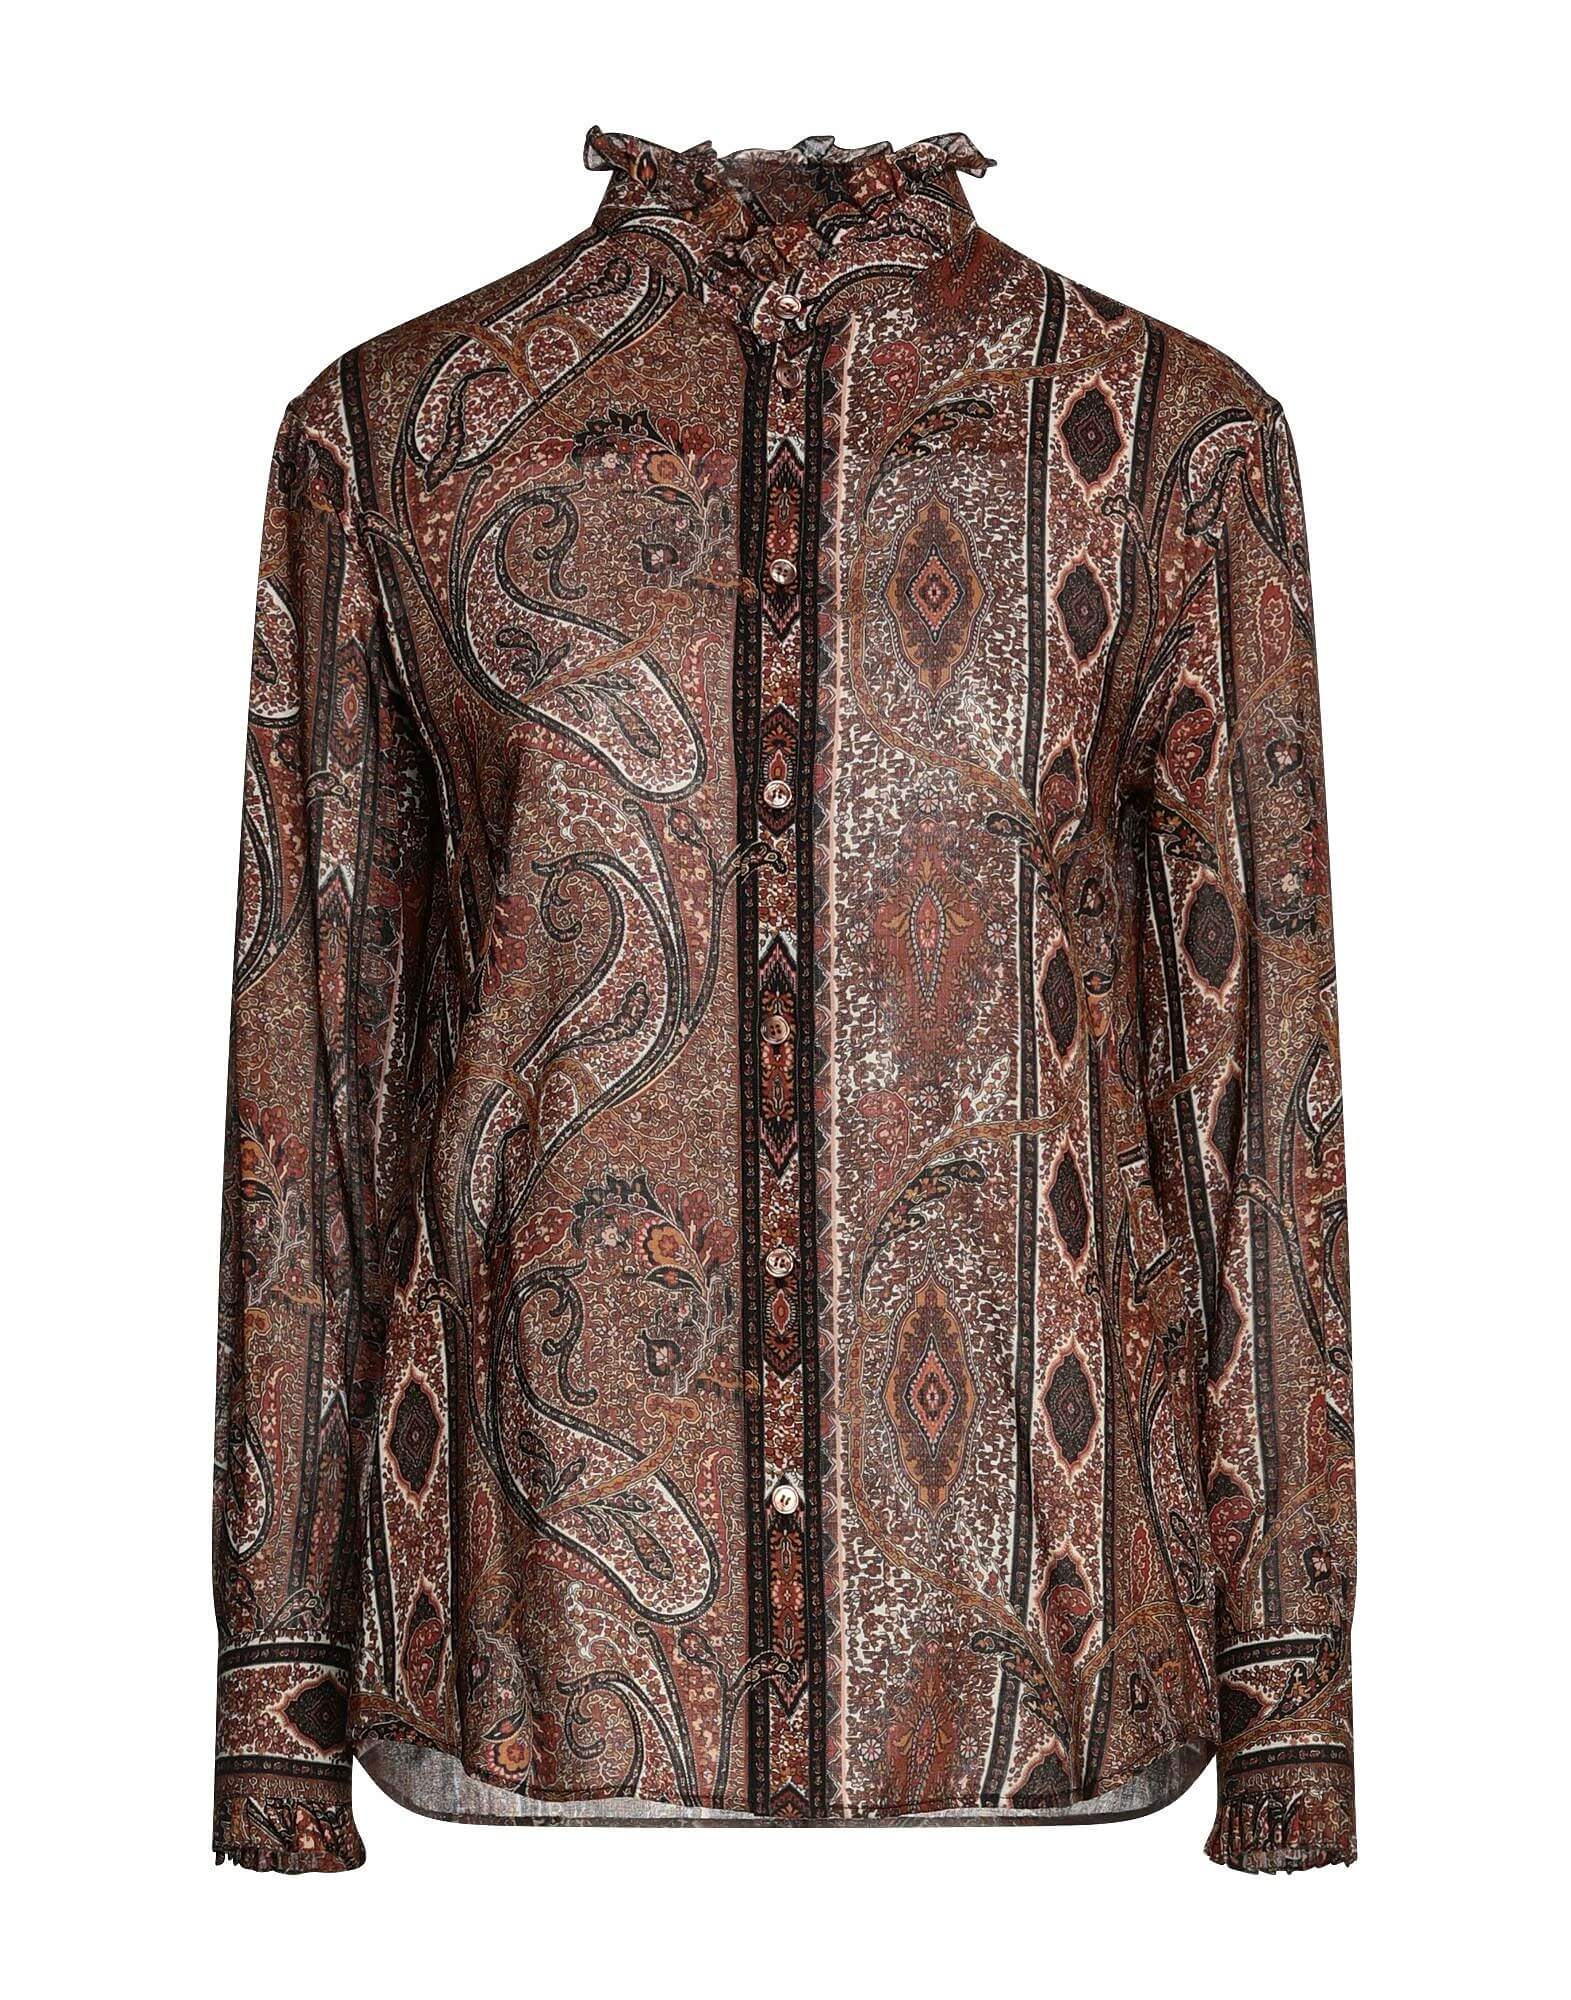 Блуза с рюшами и принтом пейсли CELINE, коричневый блуза moment с рюшами sanctuary цвет brushed floral